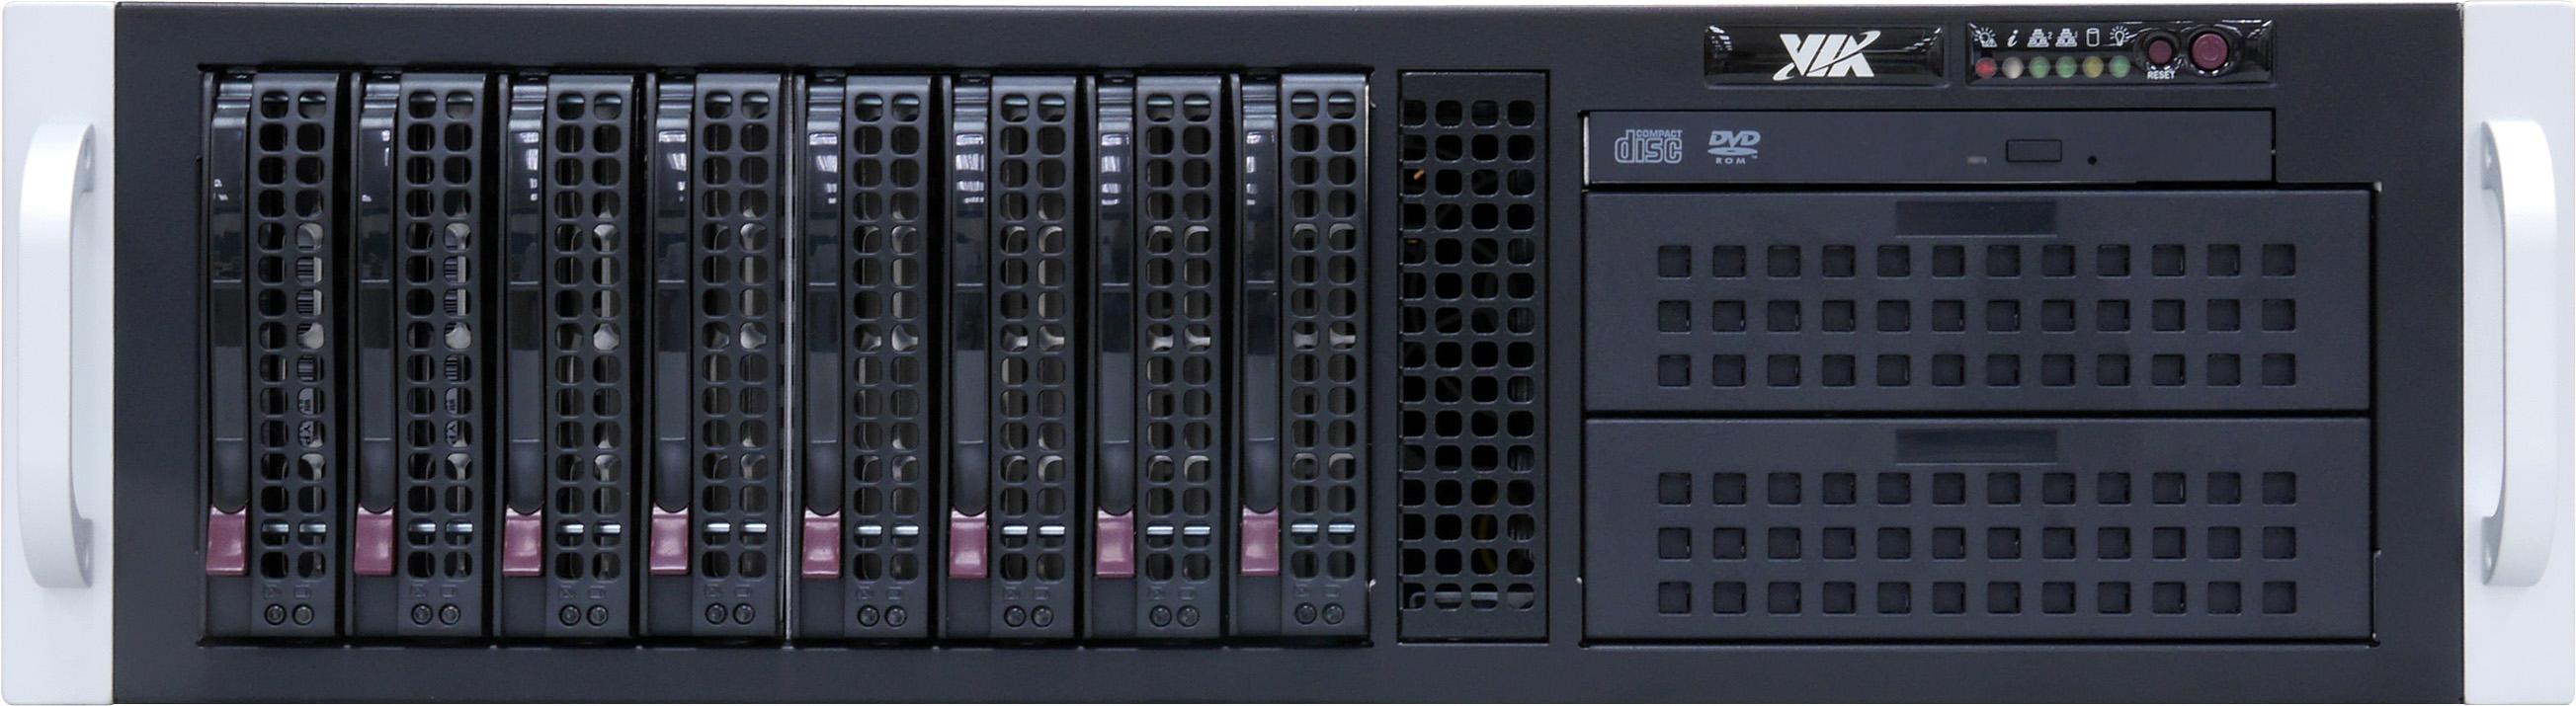 威盛MW7010多屏媒体服务器